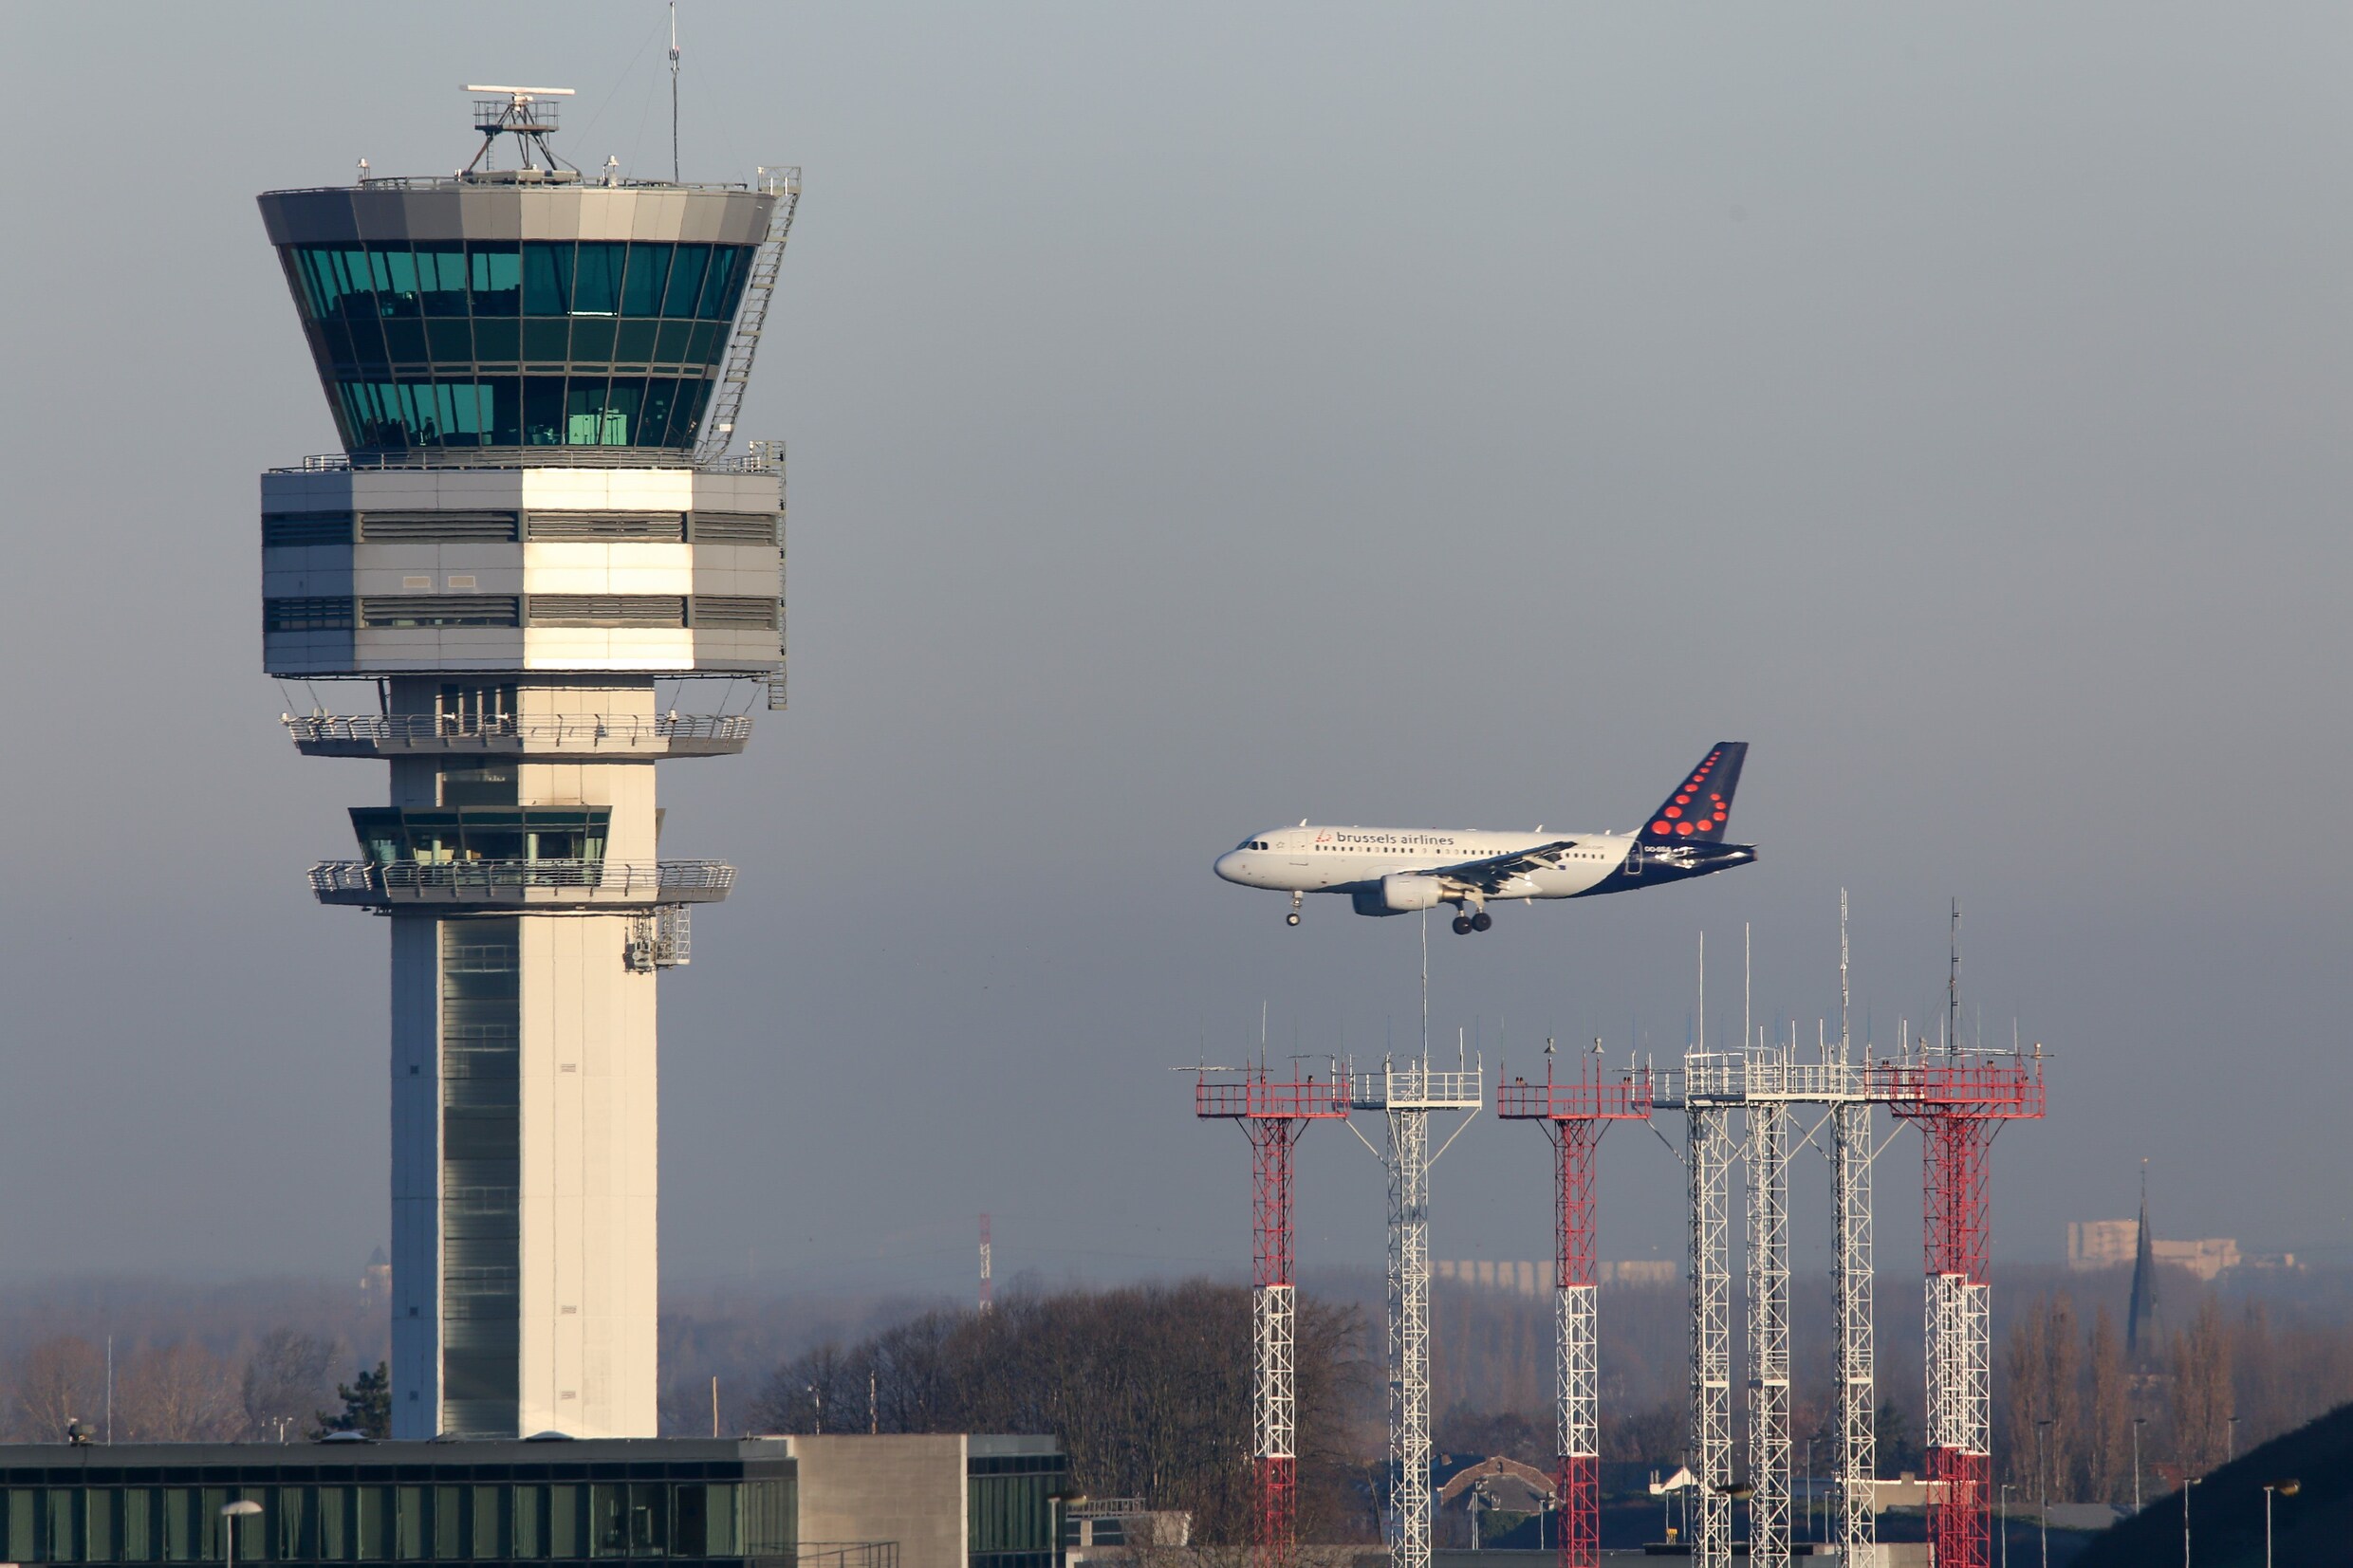 Luchtverkeersleiders voeren opnieuw actie, sector vreest "zware imagoschade”